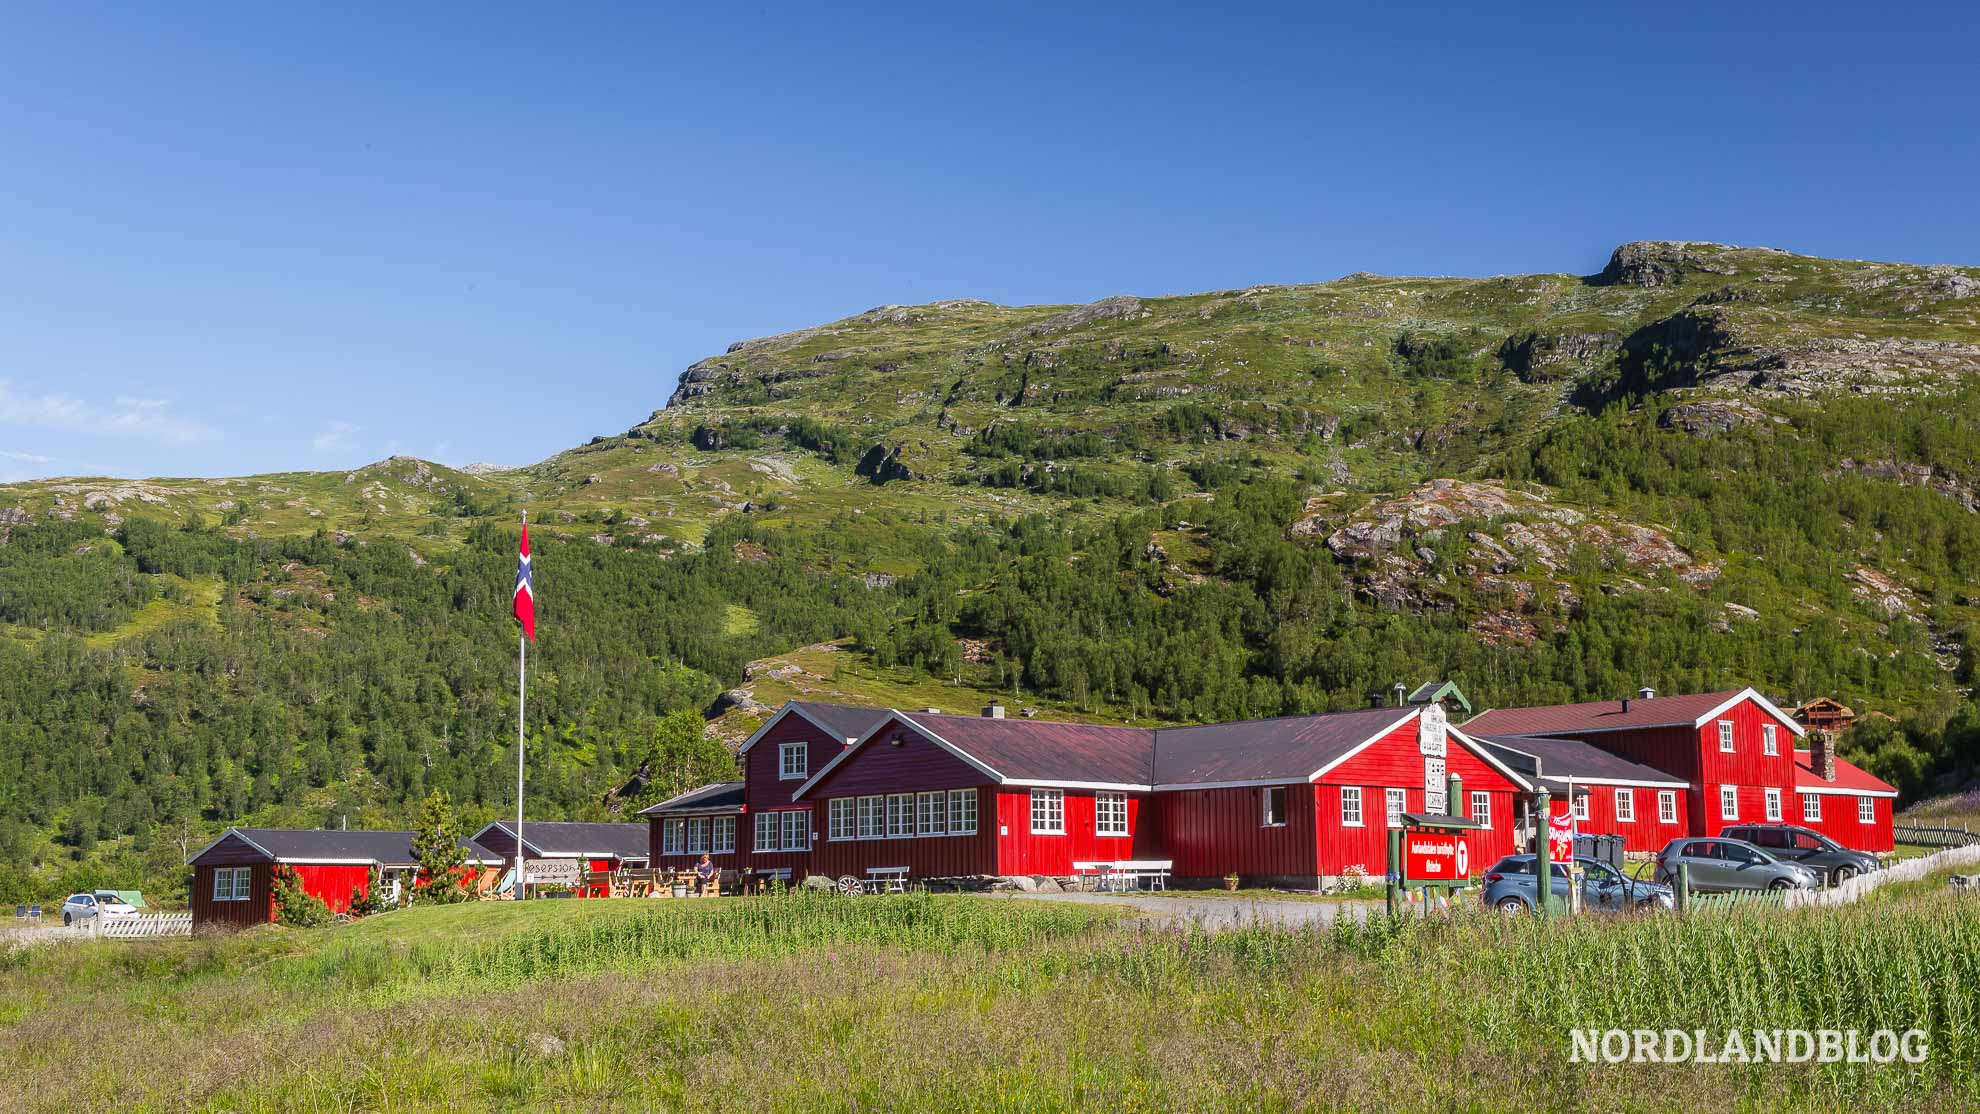 DNT Berghütte im Aurlandsdalen (Sognefjord) Norwegen - Nordlandblog